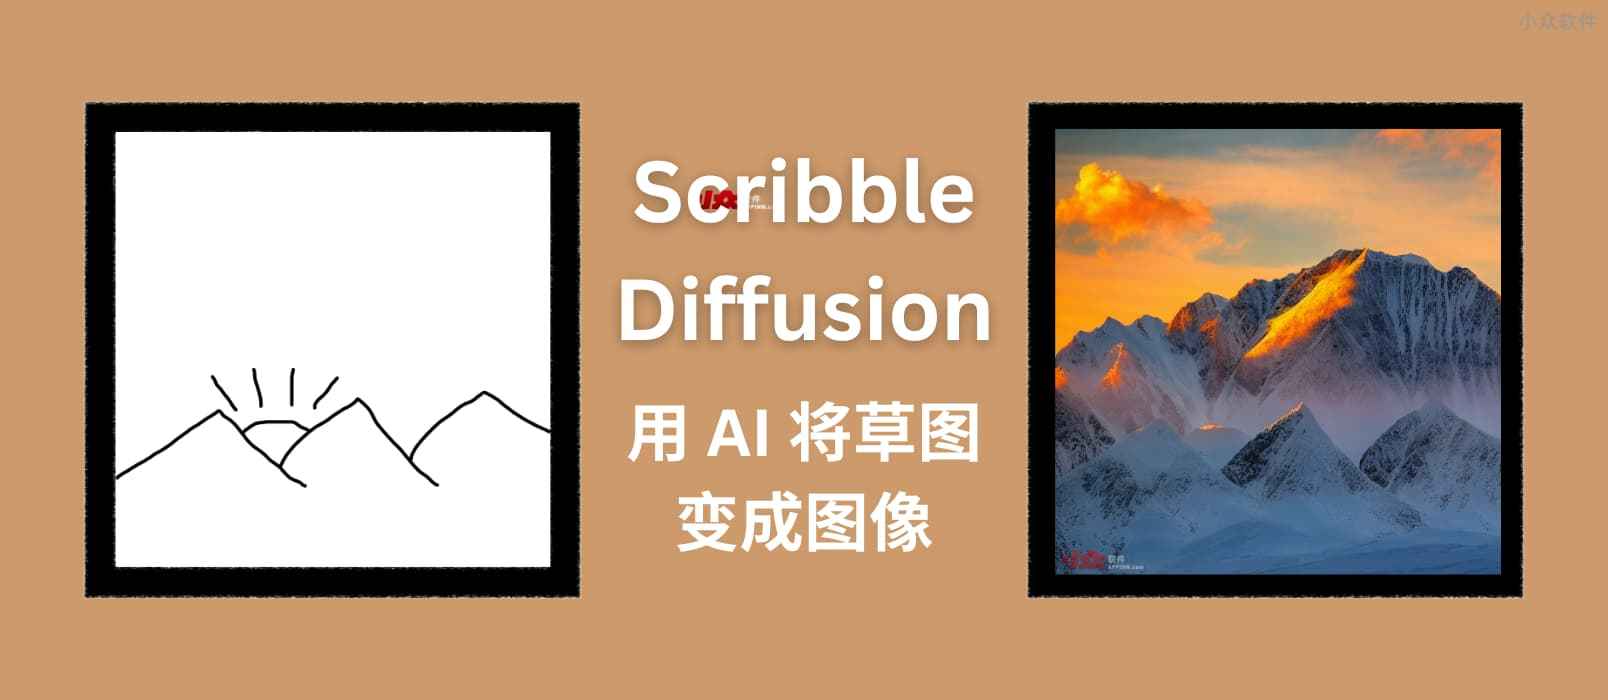 Scribble Diffusion - AI 画画，将手绘草稿转换为图片，基于 ControlNet，太搞笑了 1